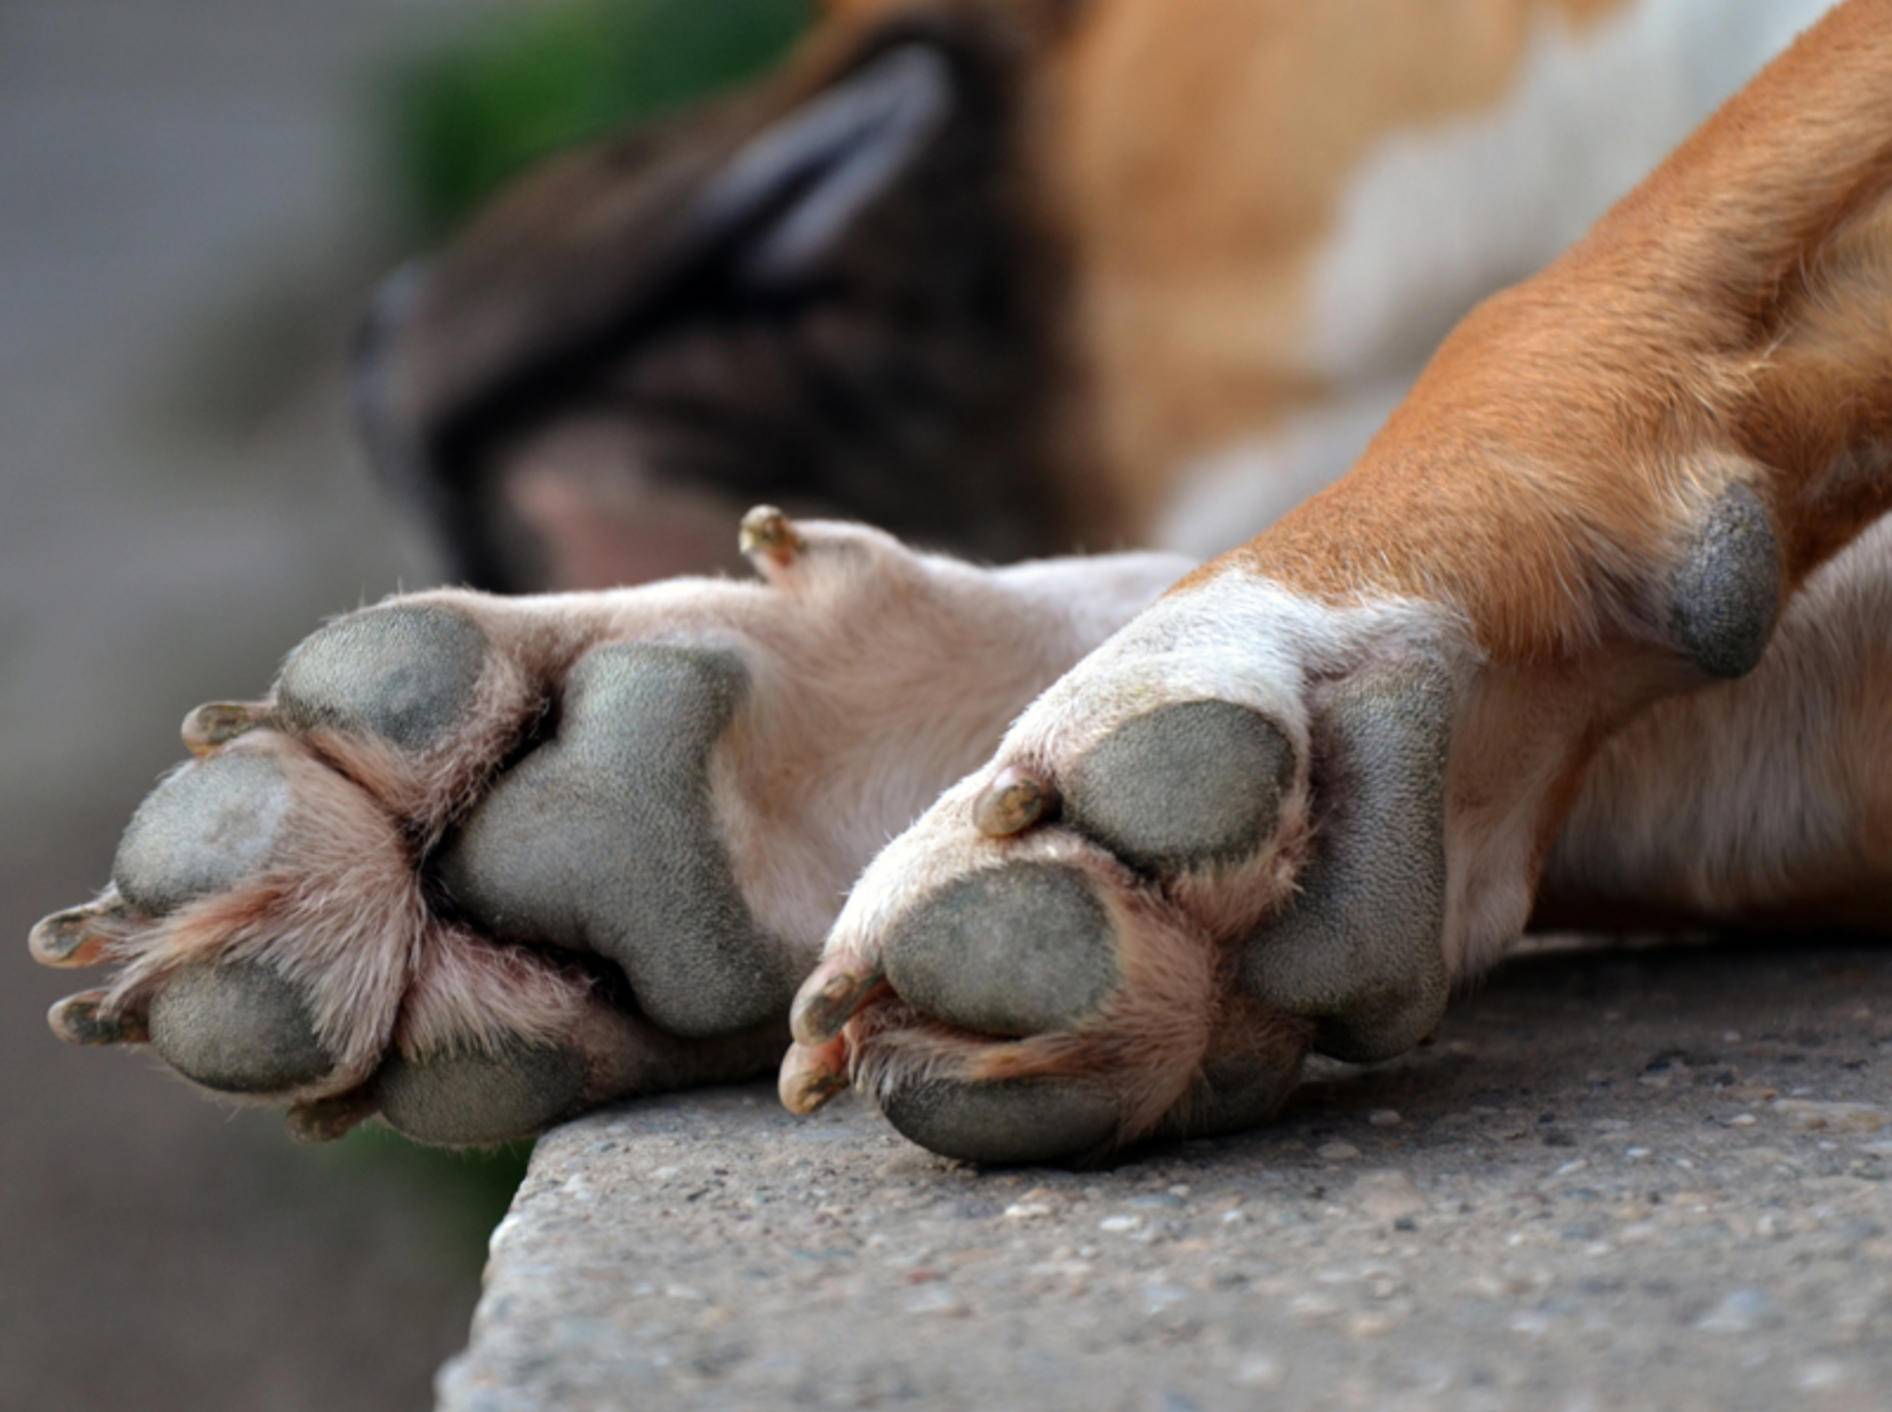 Feet dog. Лапы животных. Собачья лапа. Лапа собаки фото. Собака лапа Shutterstock.